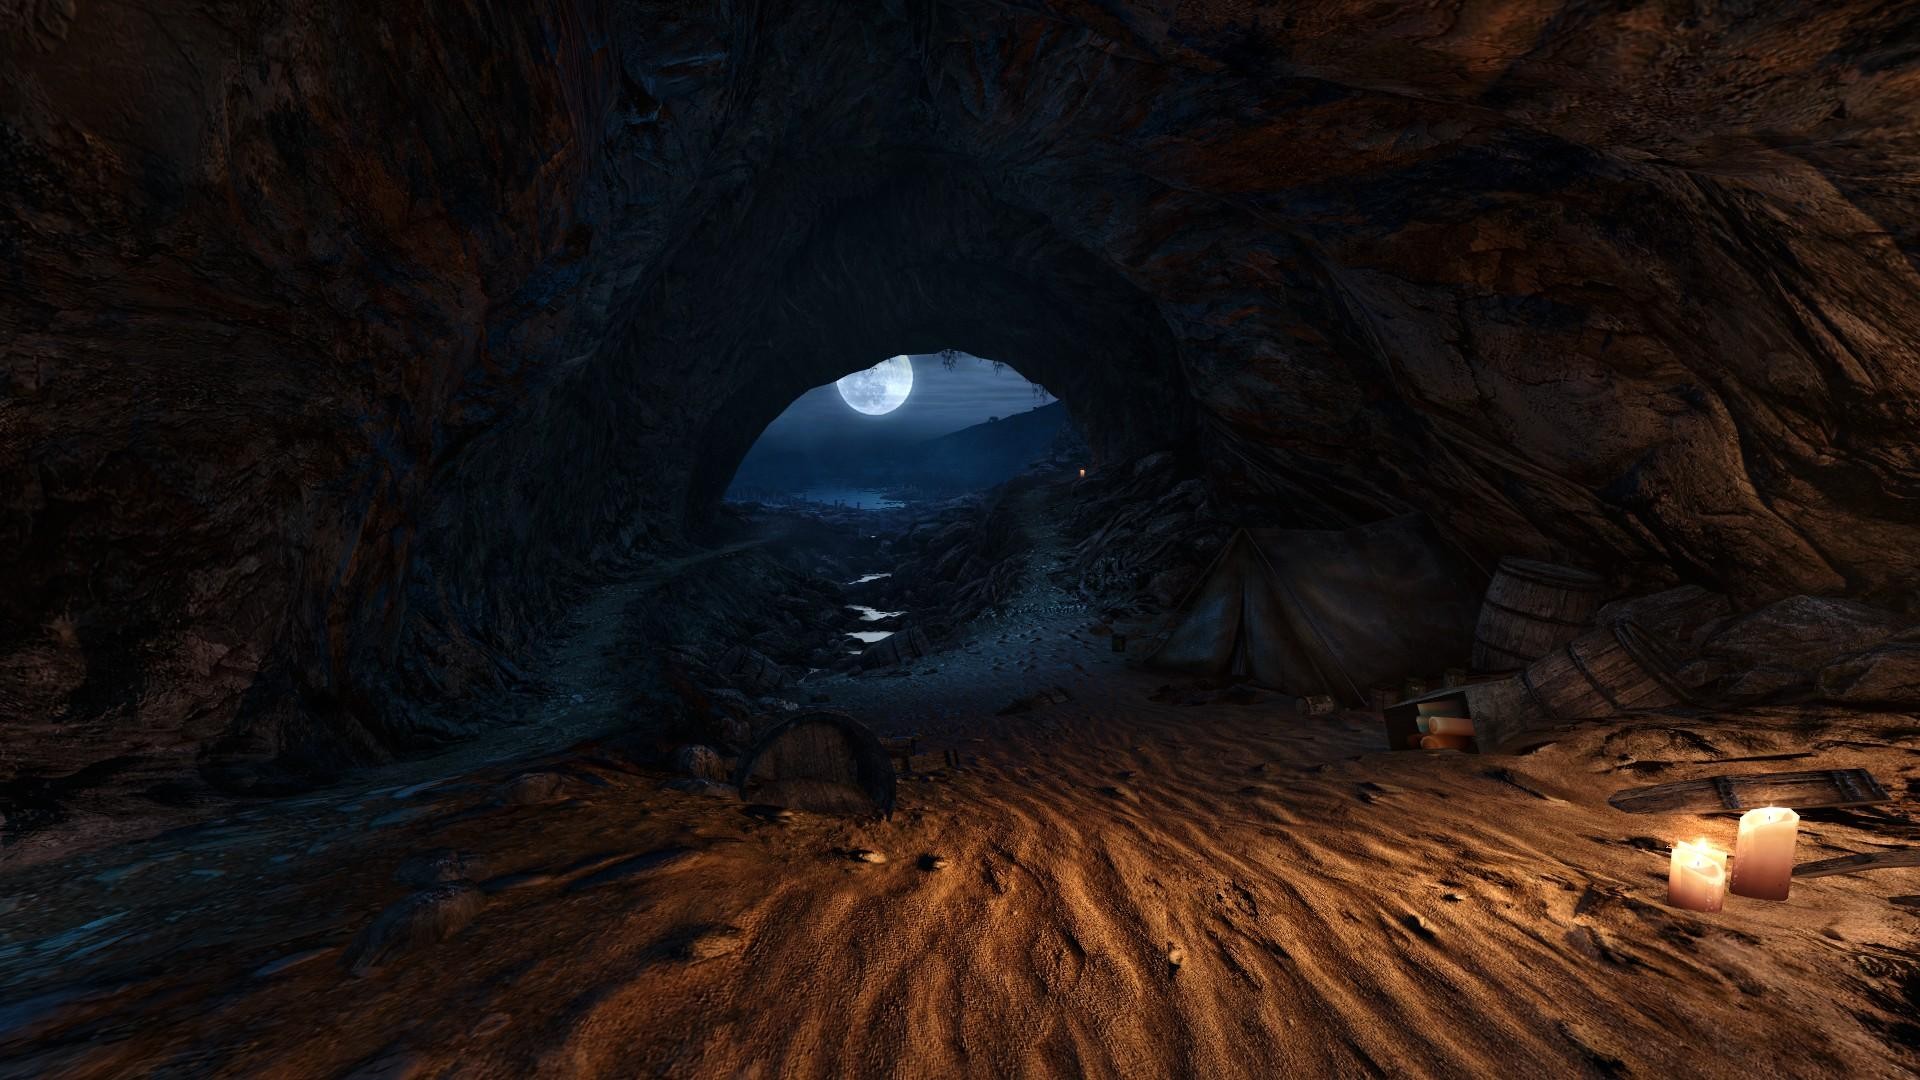 Fantasy Art Nature Cave Moon Moonlight Tent Sand Barrels Candles Video Games Dear Esther 1920x1080